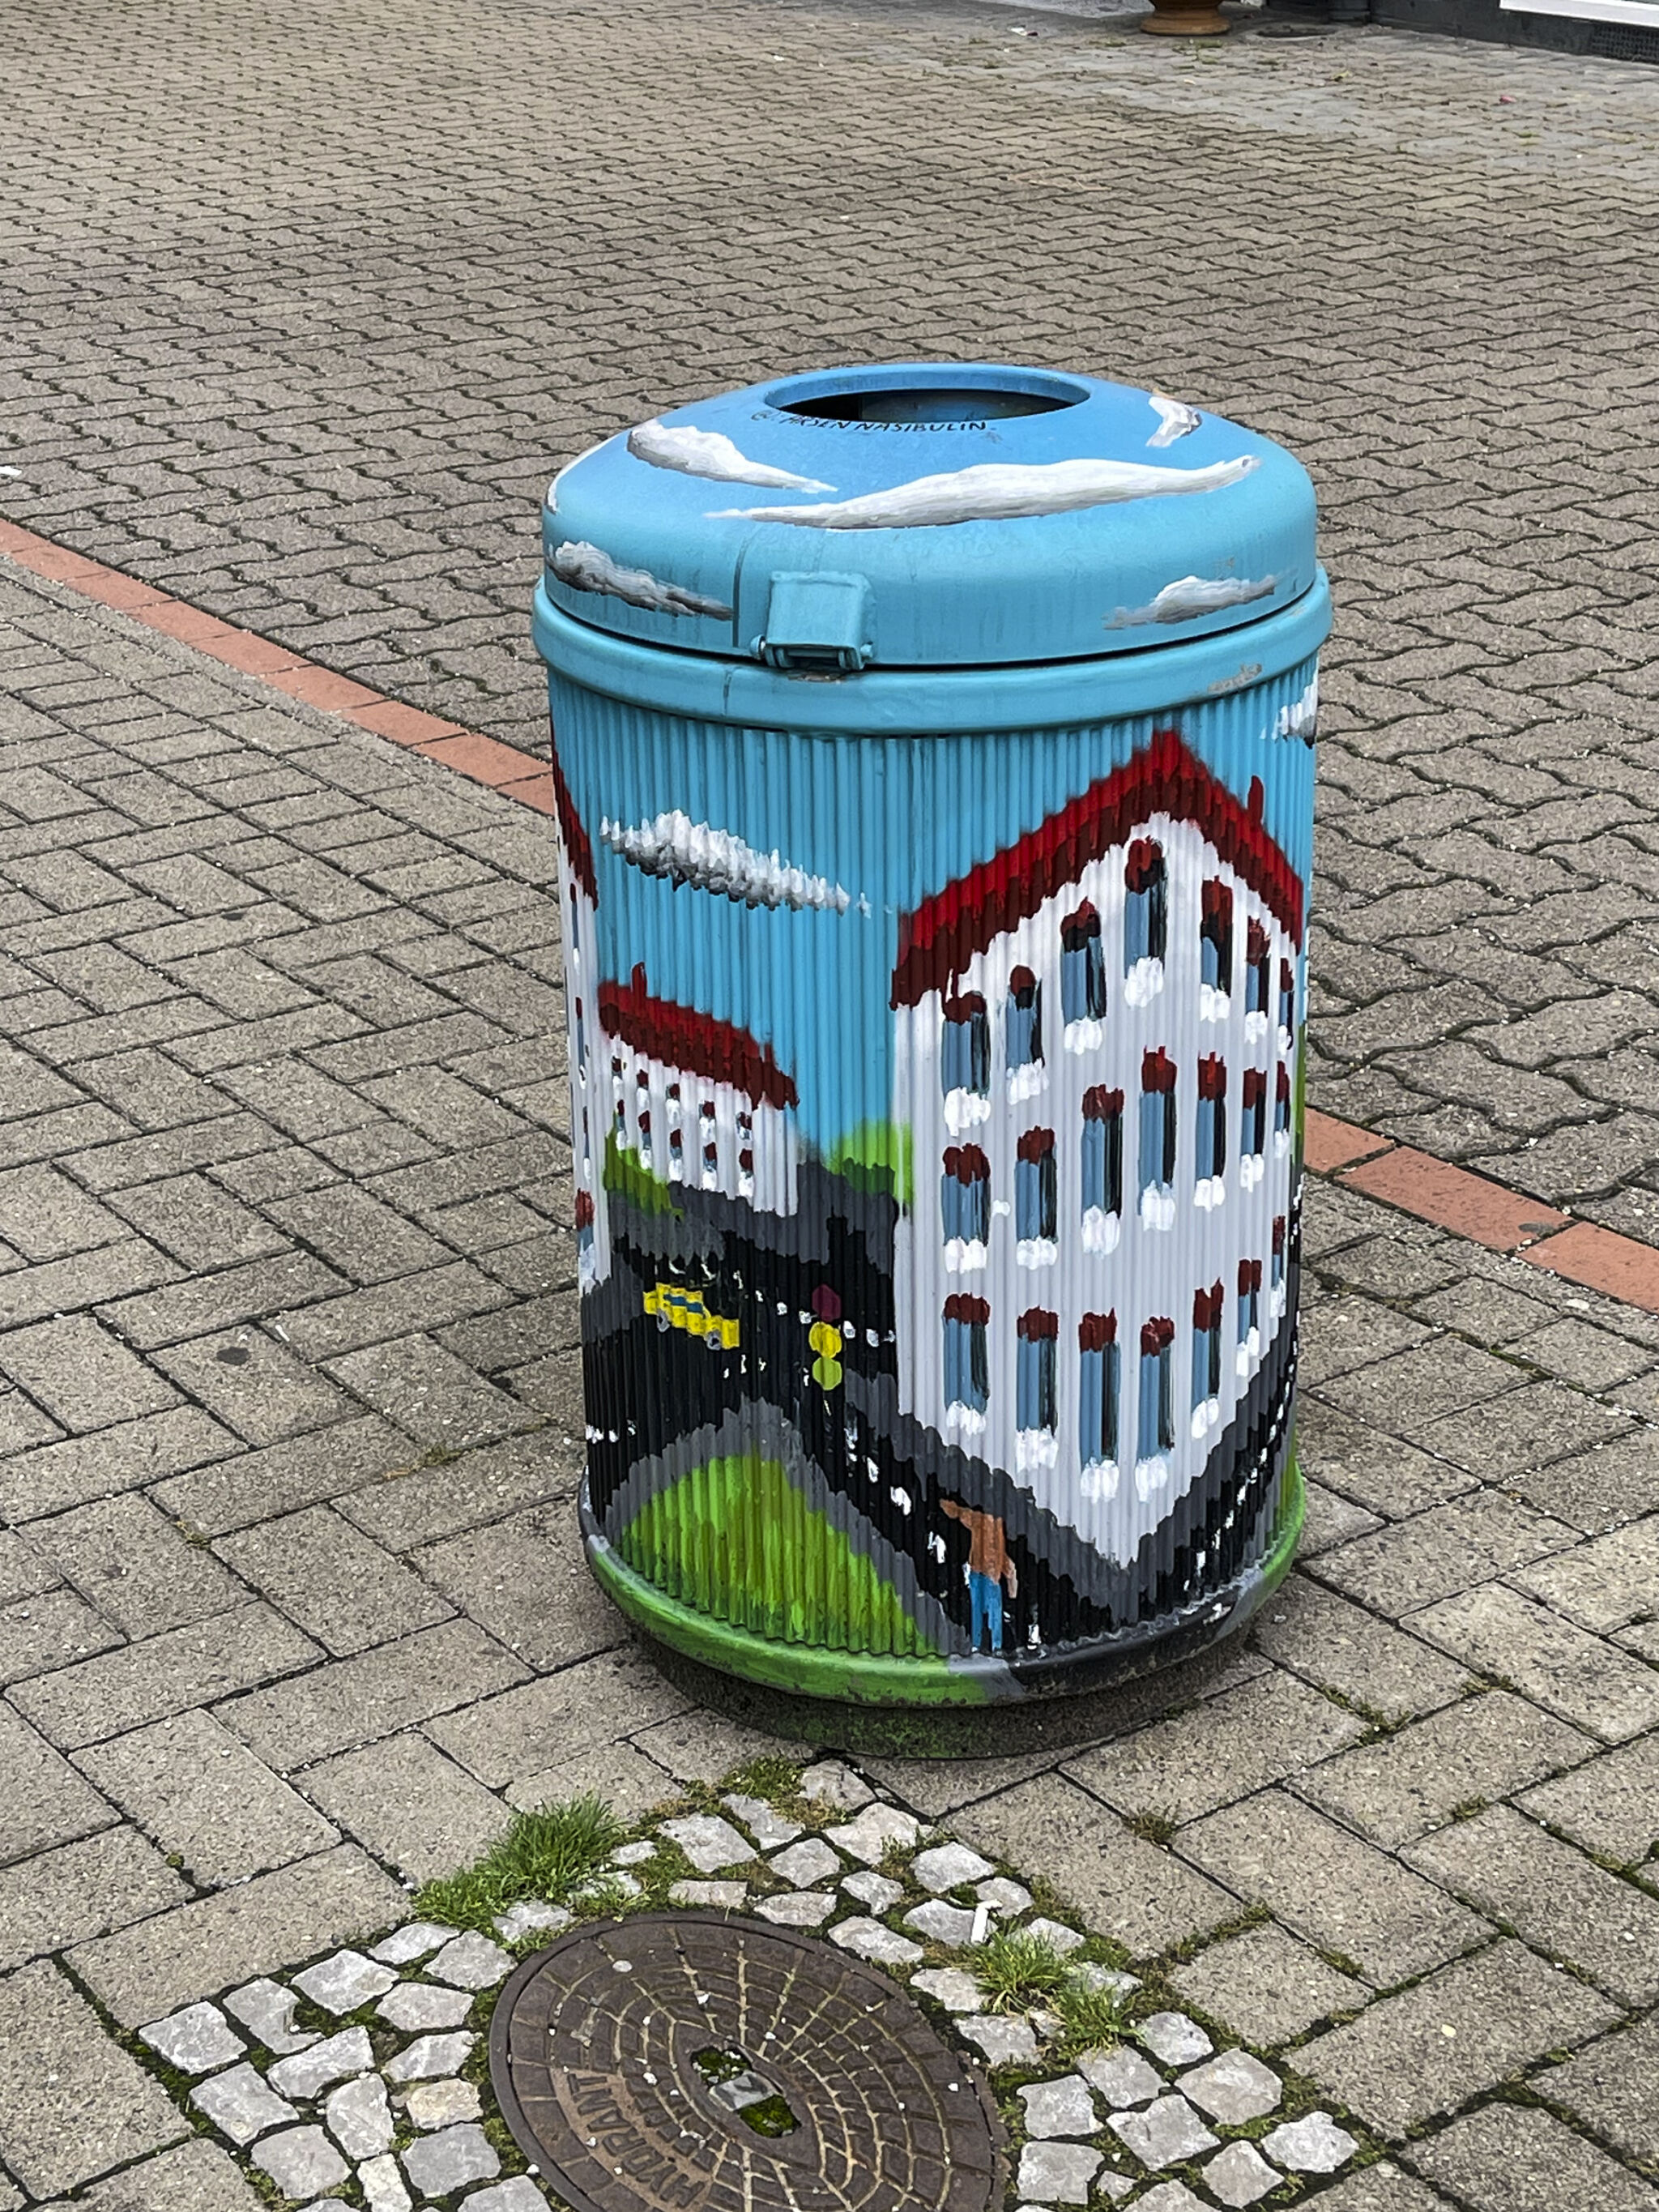 Arsen Nasibulin&mdash;Garbage cans